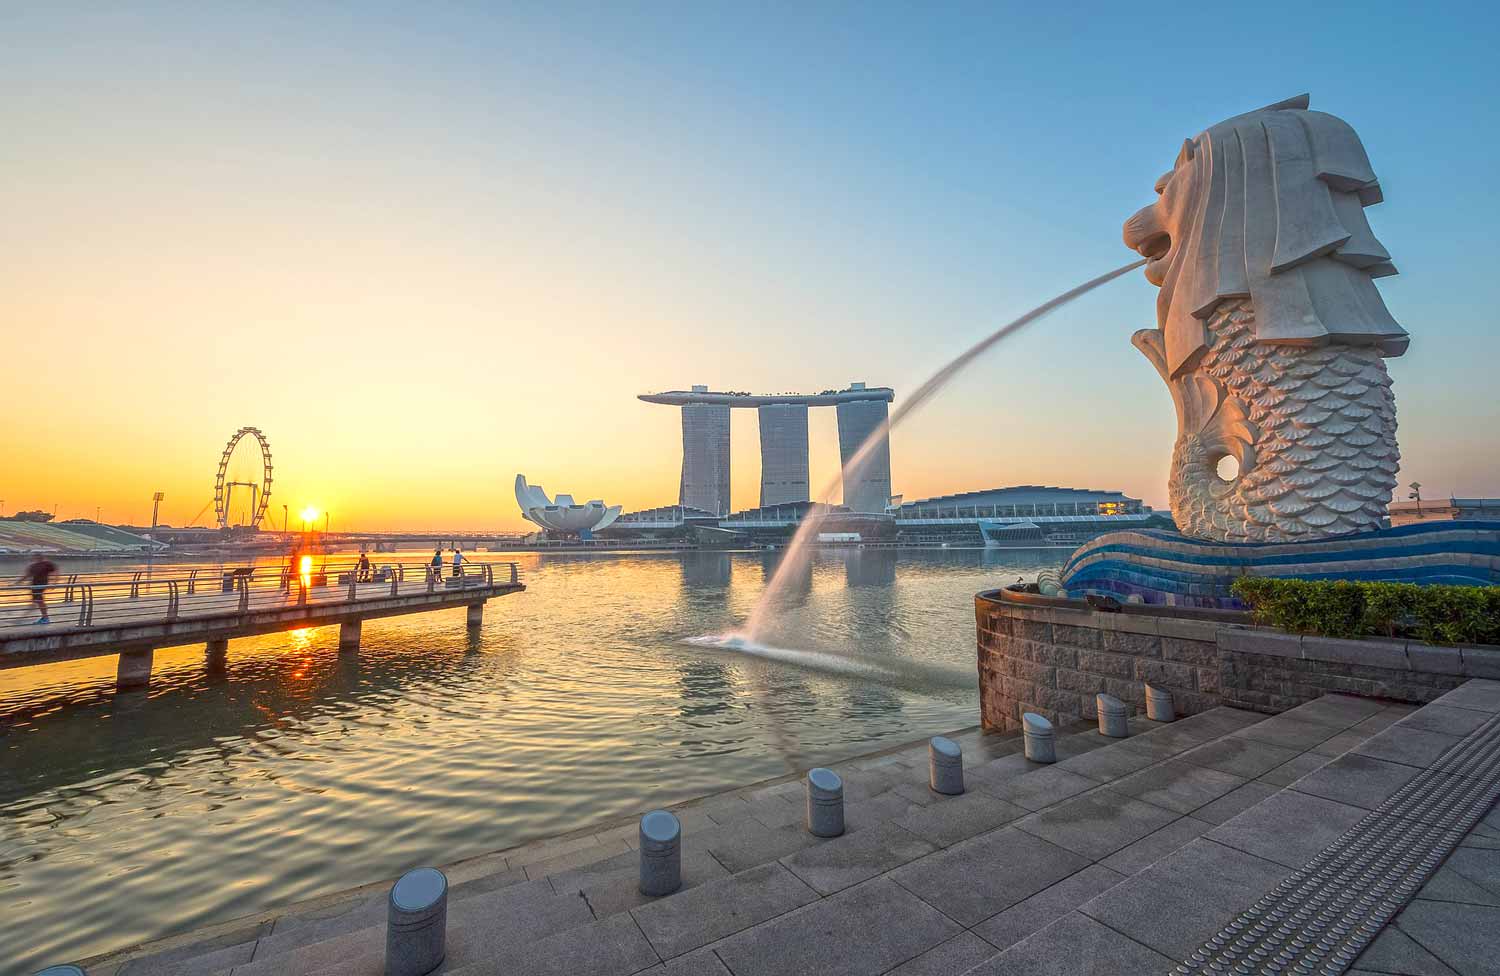 Singapur Sehenswürdigkeiten - 10 Dinge, die du machen solltest! #singapur #sightseeing #sehenswürdigkeiten #südostasien #highlights #tipps #topthingstodo